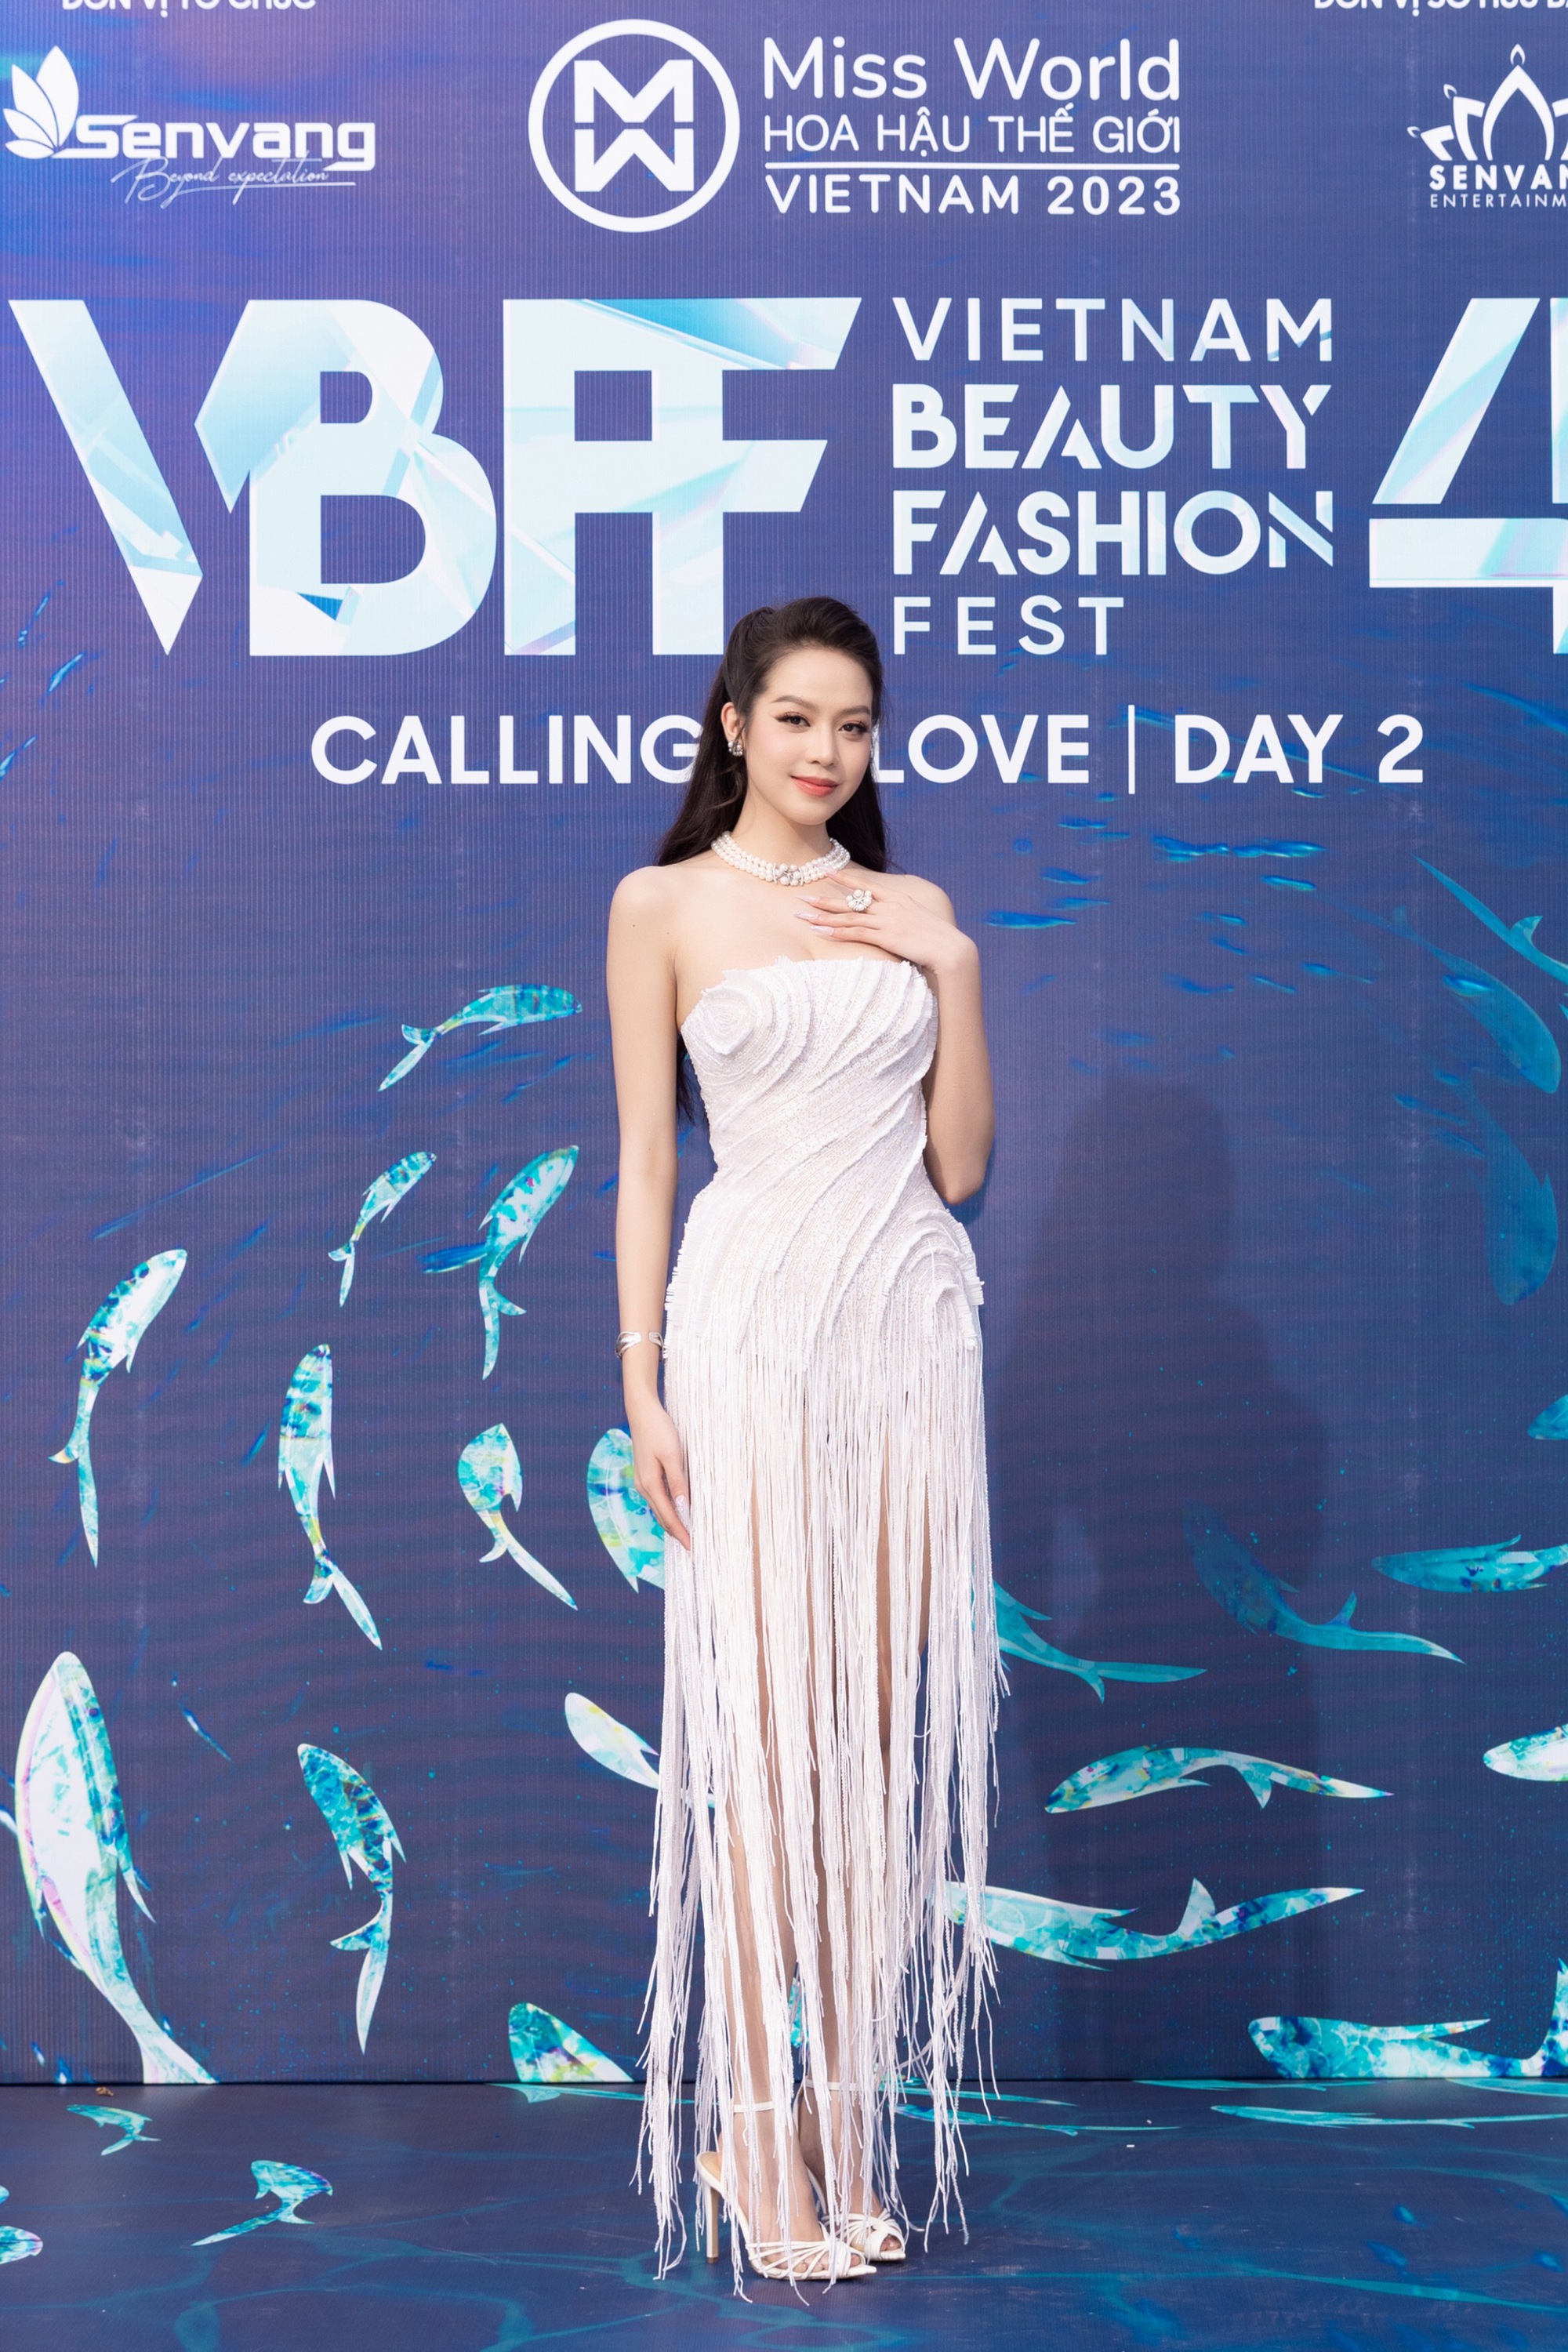 Đông đảo người đẹp khoe sắc trên thảm đỏ Vietnam Beauty Fashion Fest 4  - Ảnh 3.